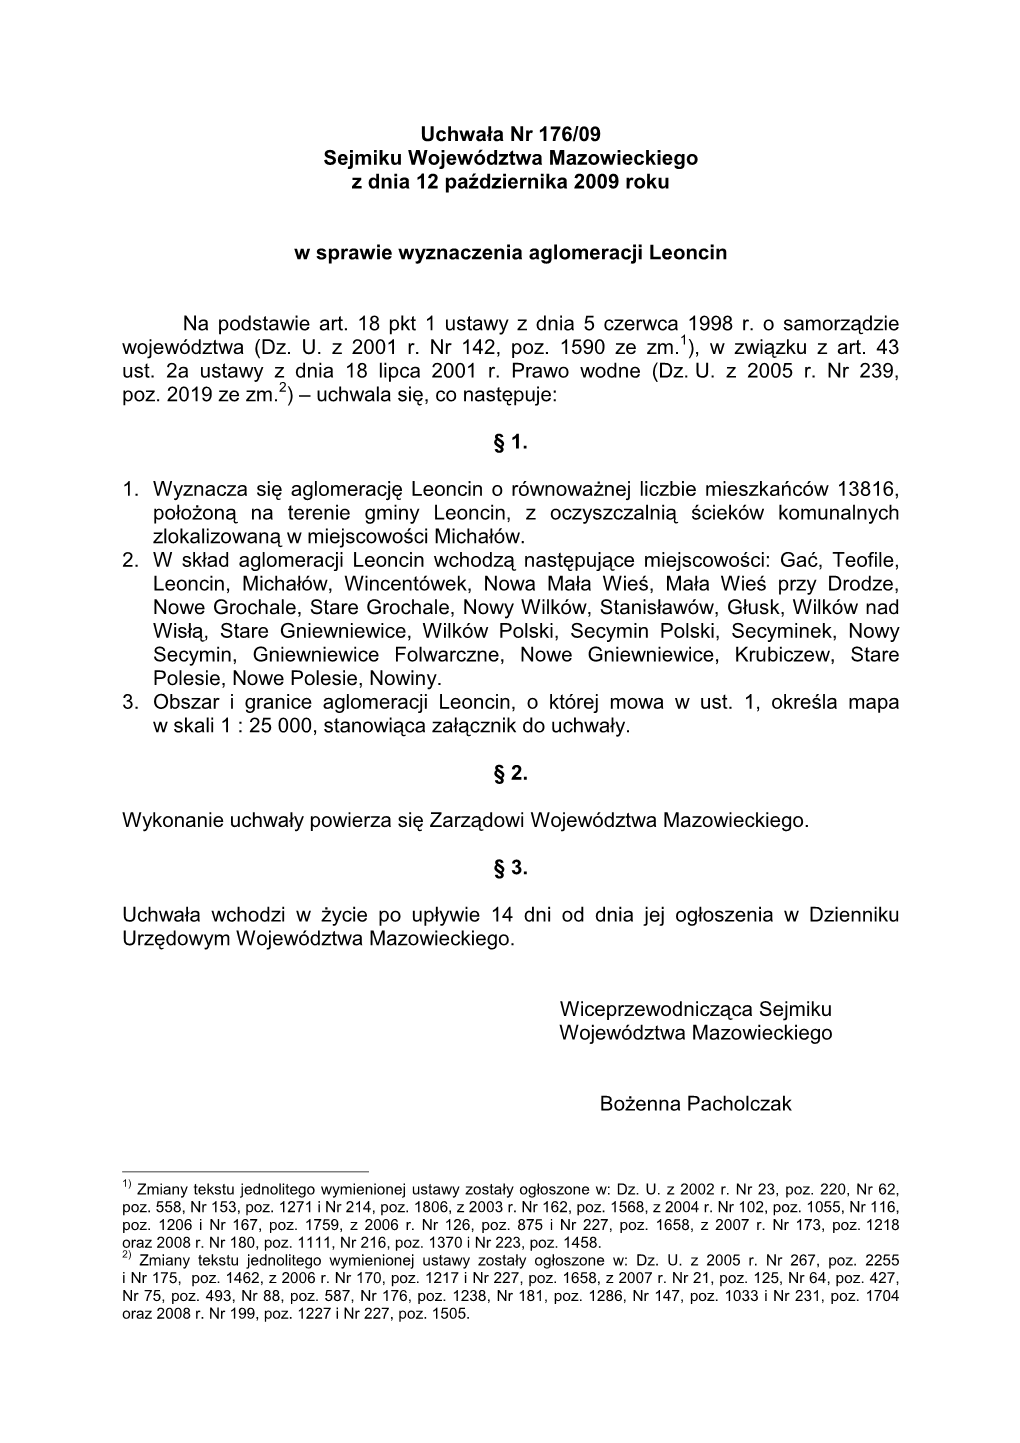 Uchwała Nr 176/09 Sejmiku Województwa Mazowieckiego Z Dnia 12 Pa Ździernika 2009 Roku